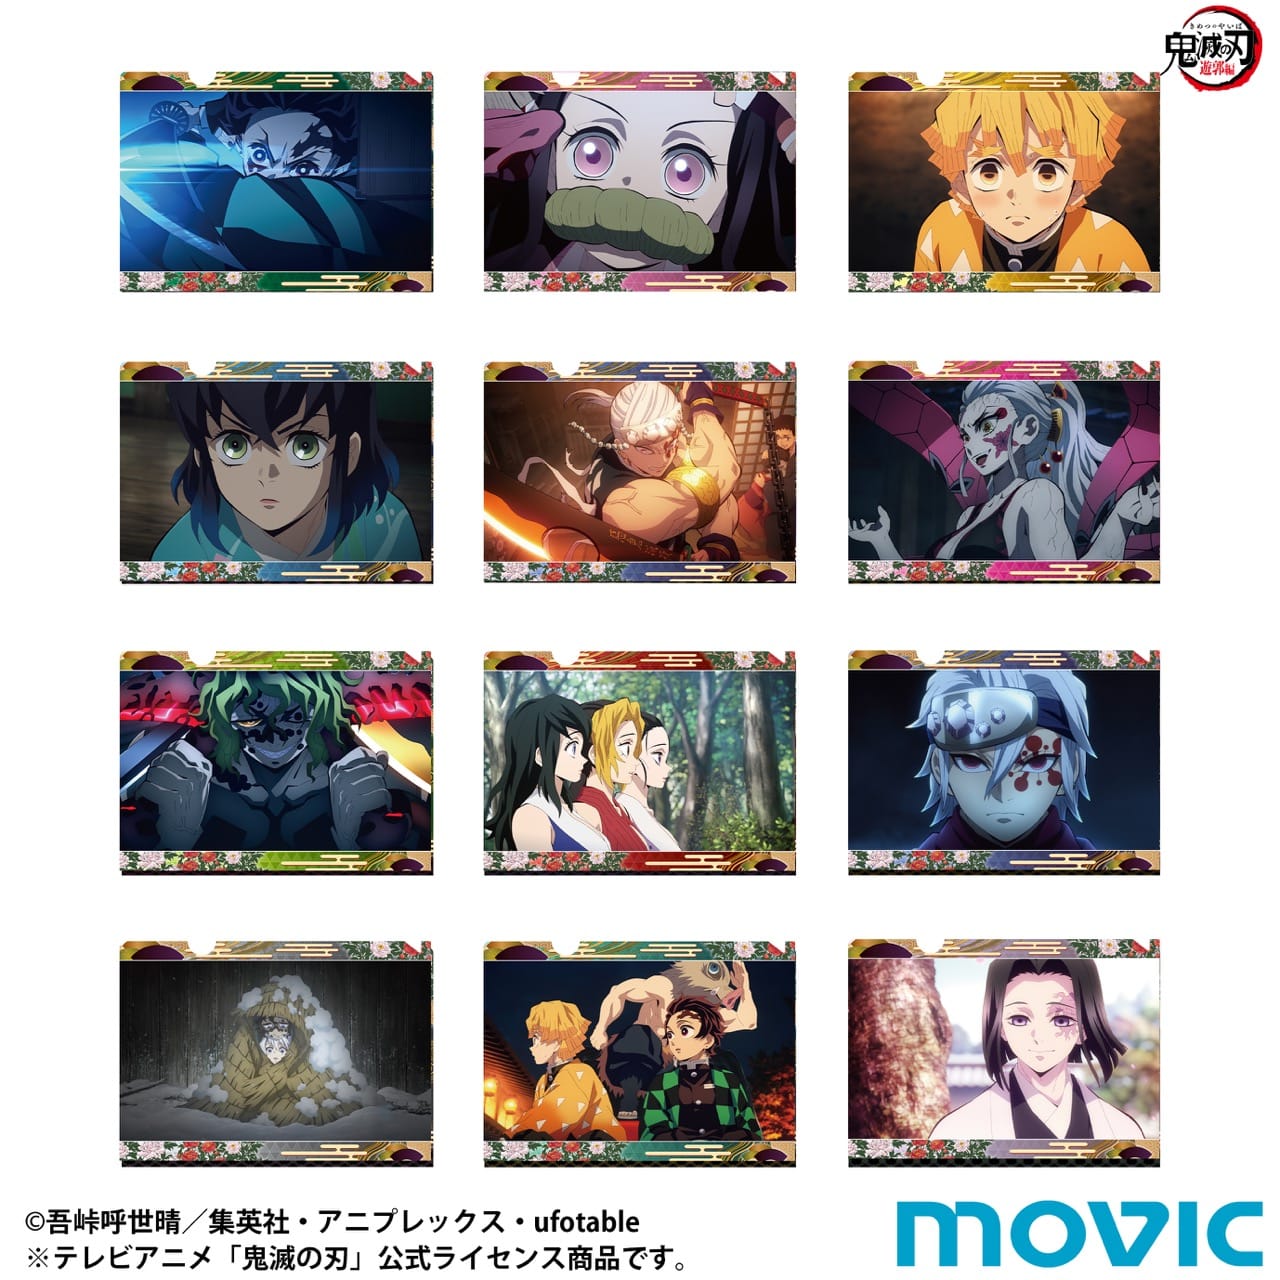 鬼滅の刃 ミニクリアファイルコレクション Box Anime Store Jp